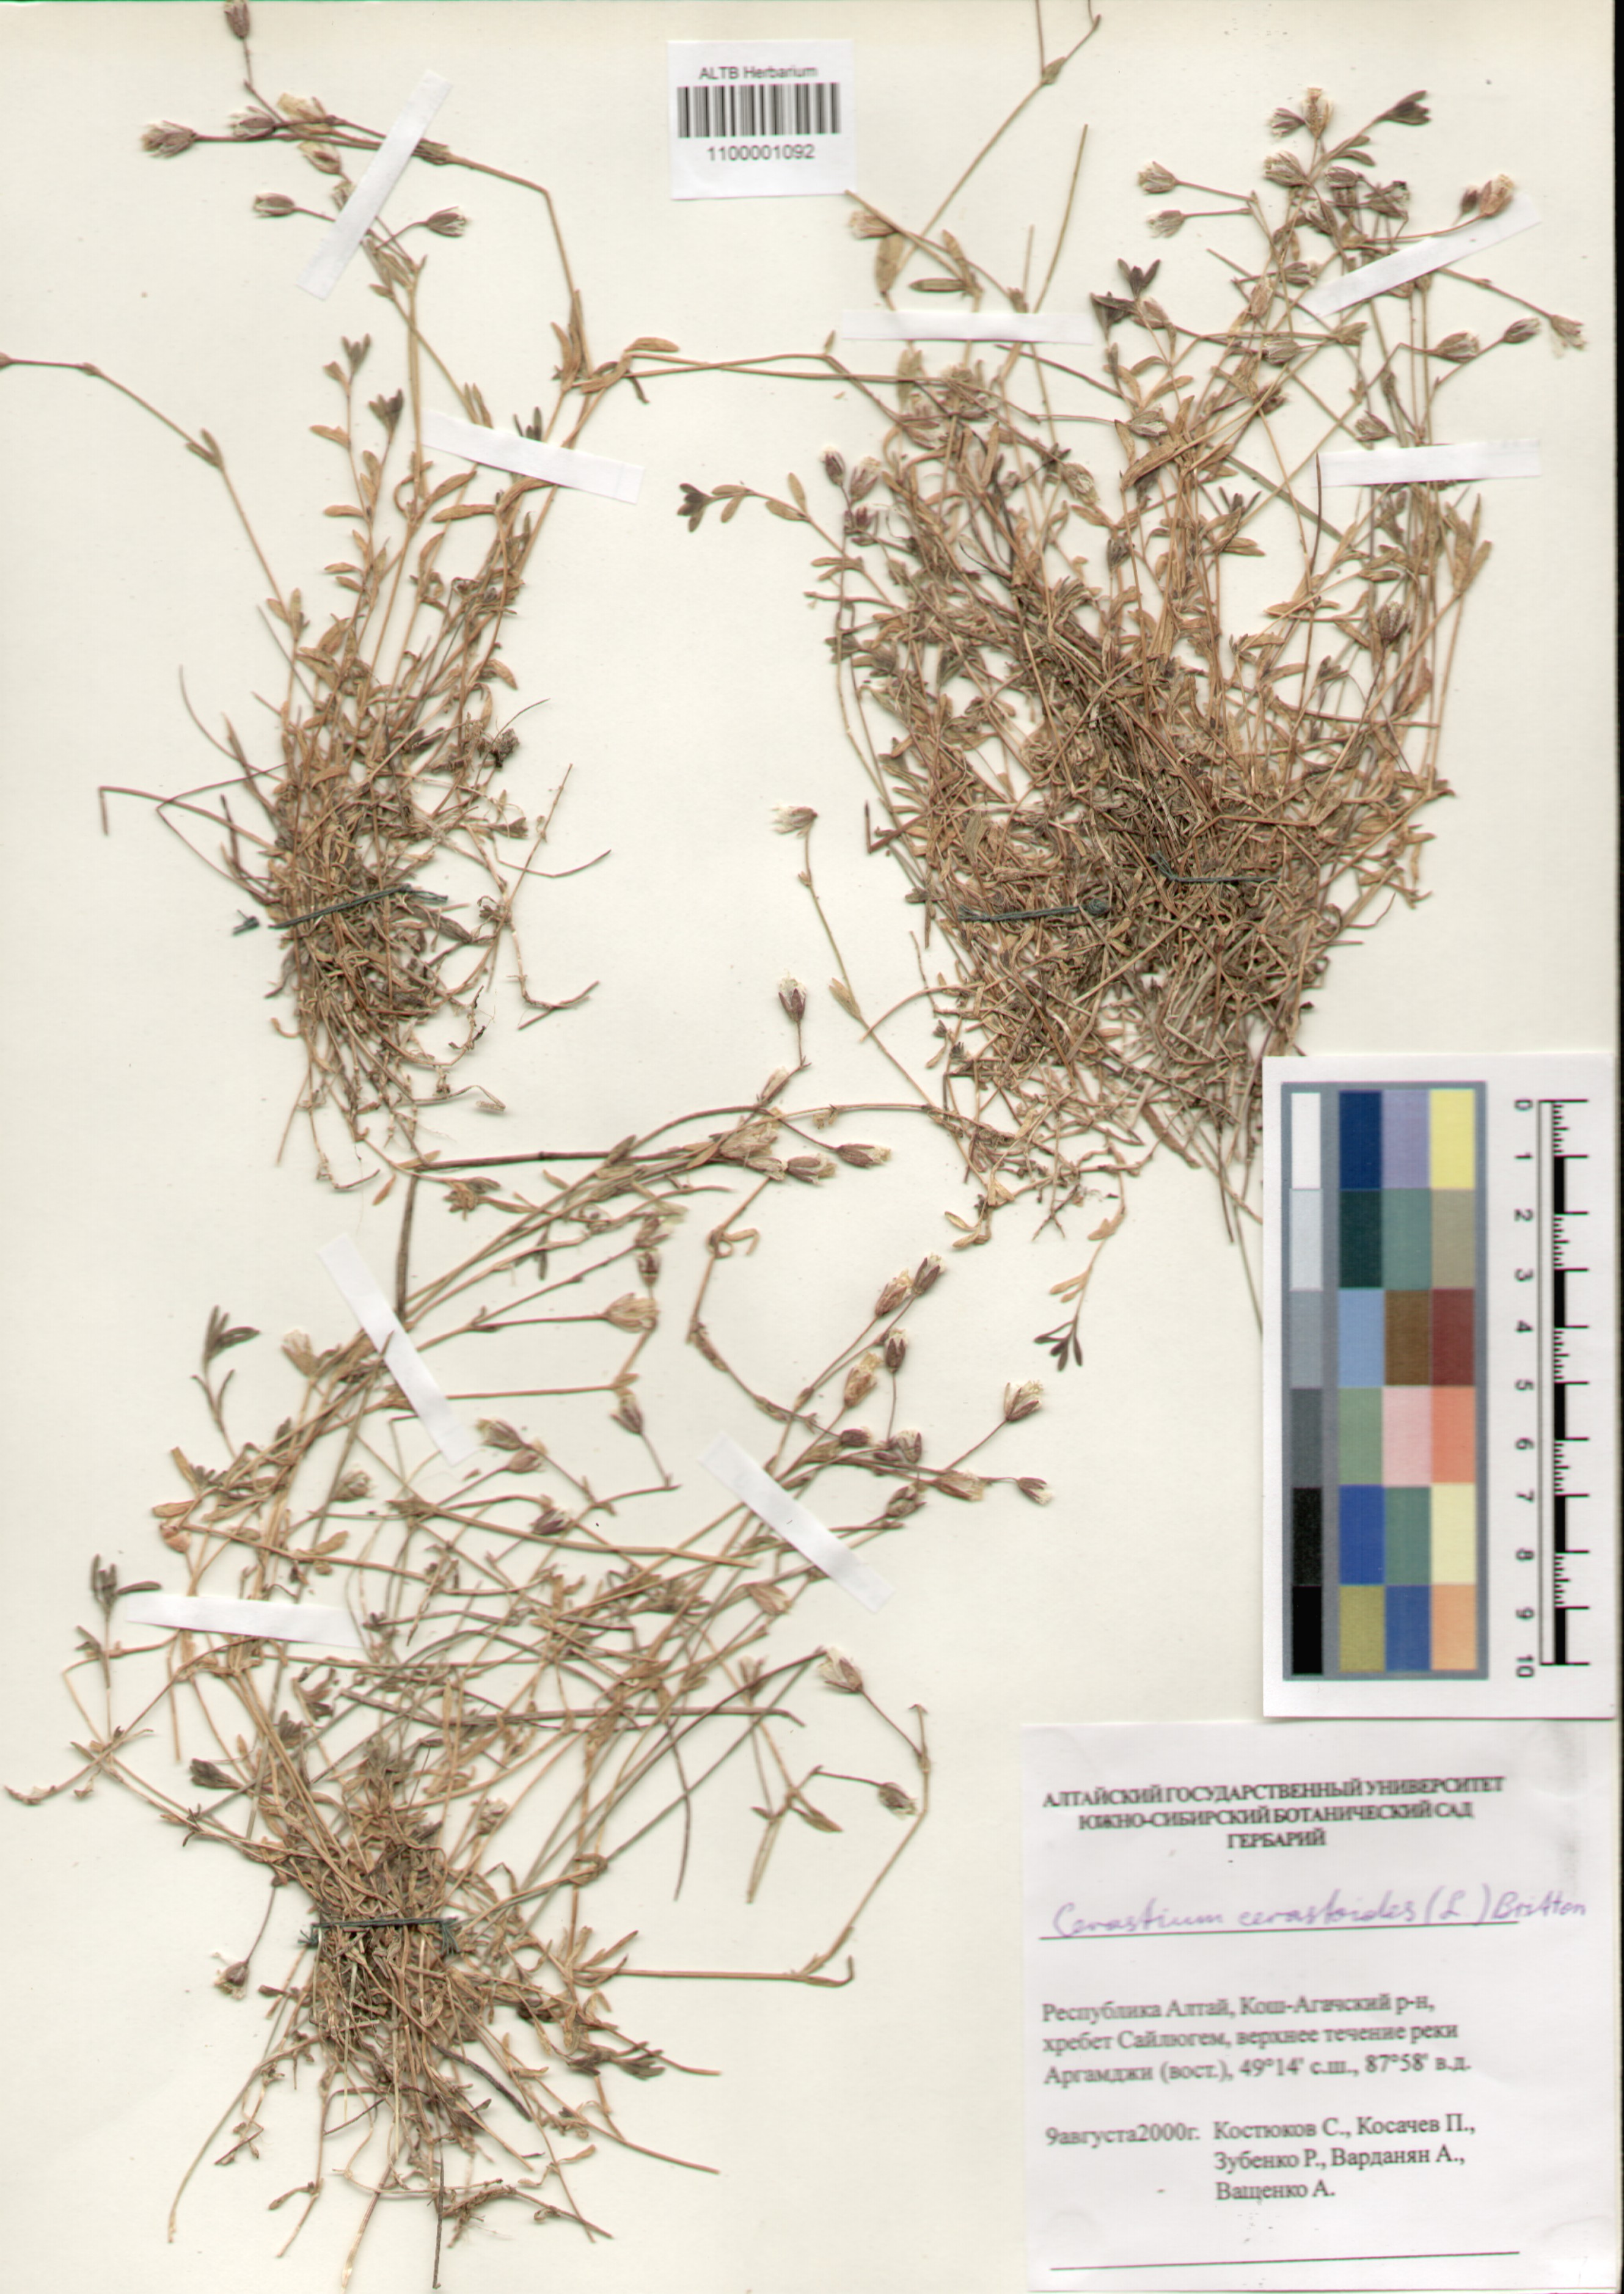 Caryophyllaceae,Cerastium cerastoides (L.) Britt.